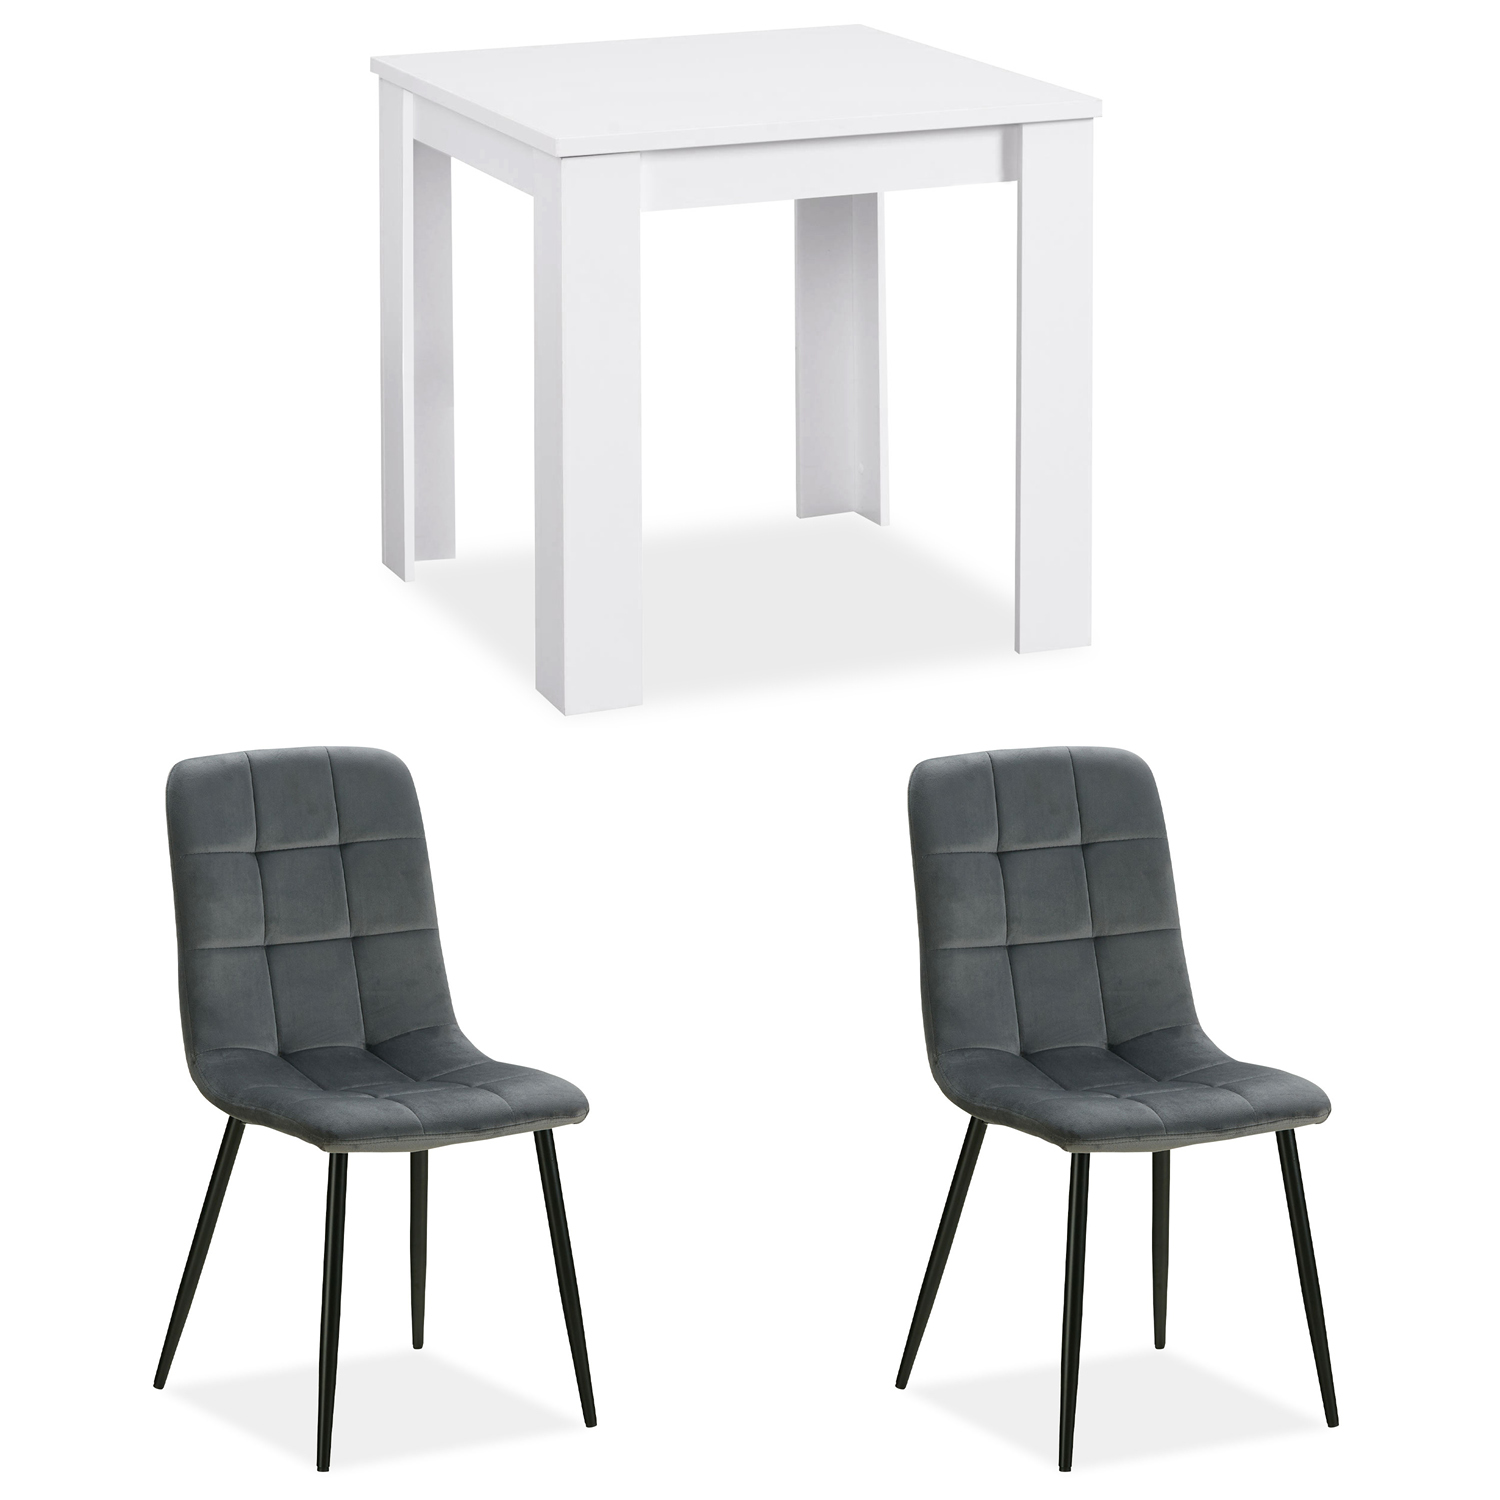 Essgruppe mit 2 Stühlen Esstisch Weiß 80x80 cm Esszimmertisch Holz Massiv Polsterstühle Samt Grau